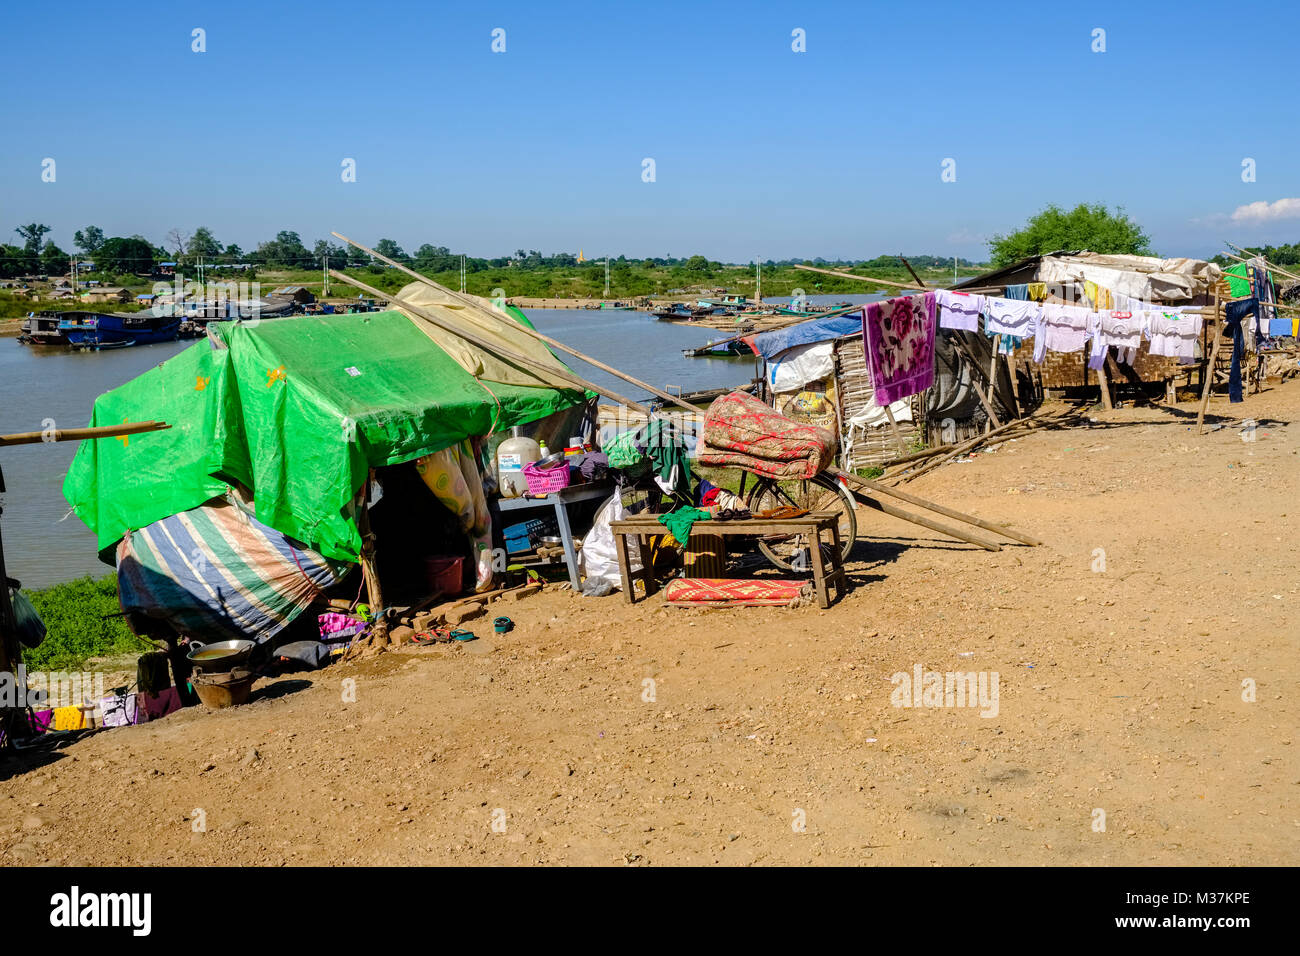 Baracche baraccopoli alla periferia della città nei pressi del fiume Irrawaddy Foto Stock